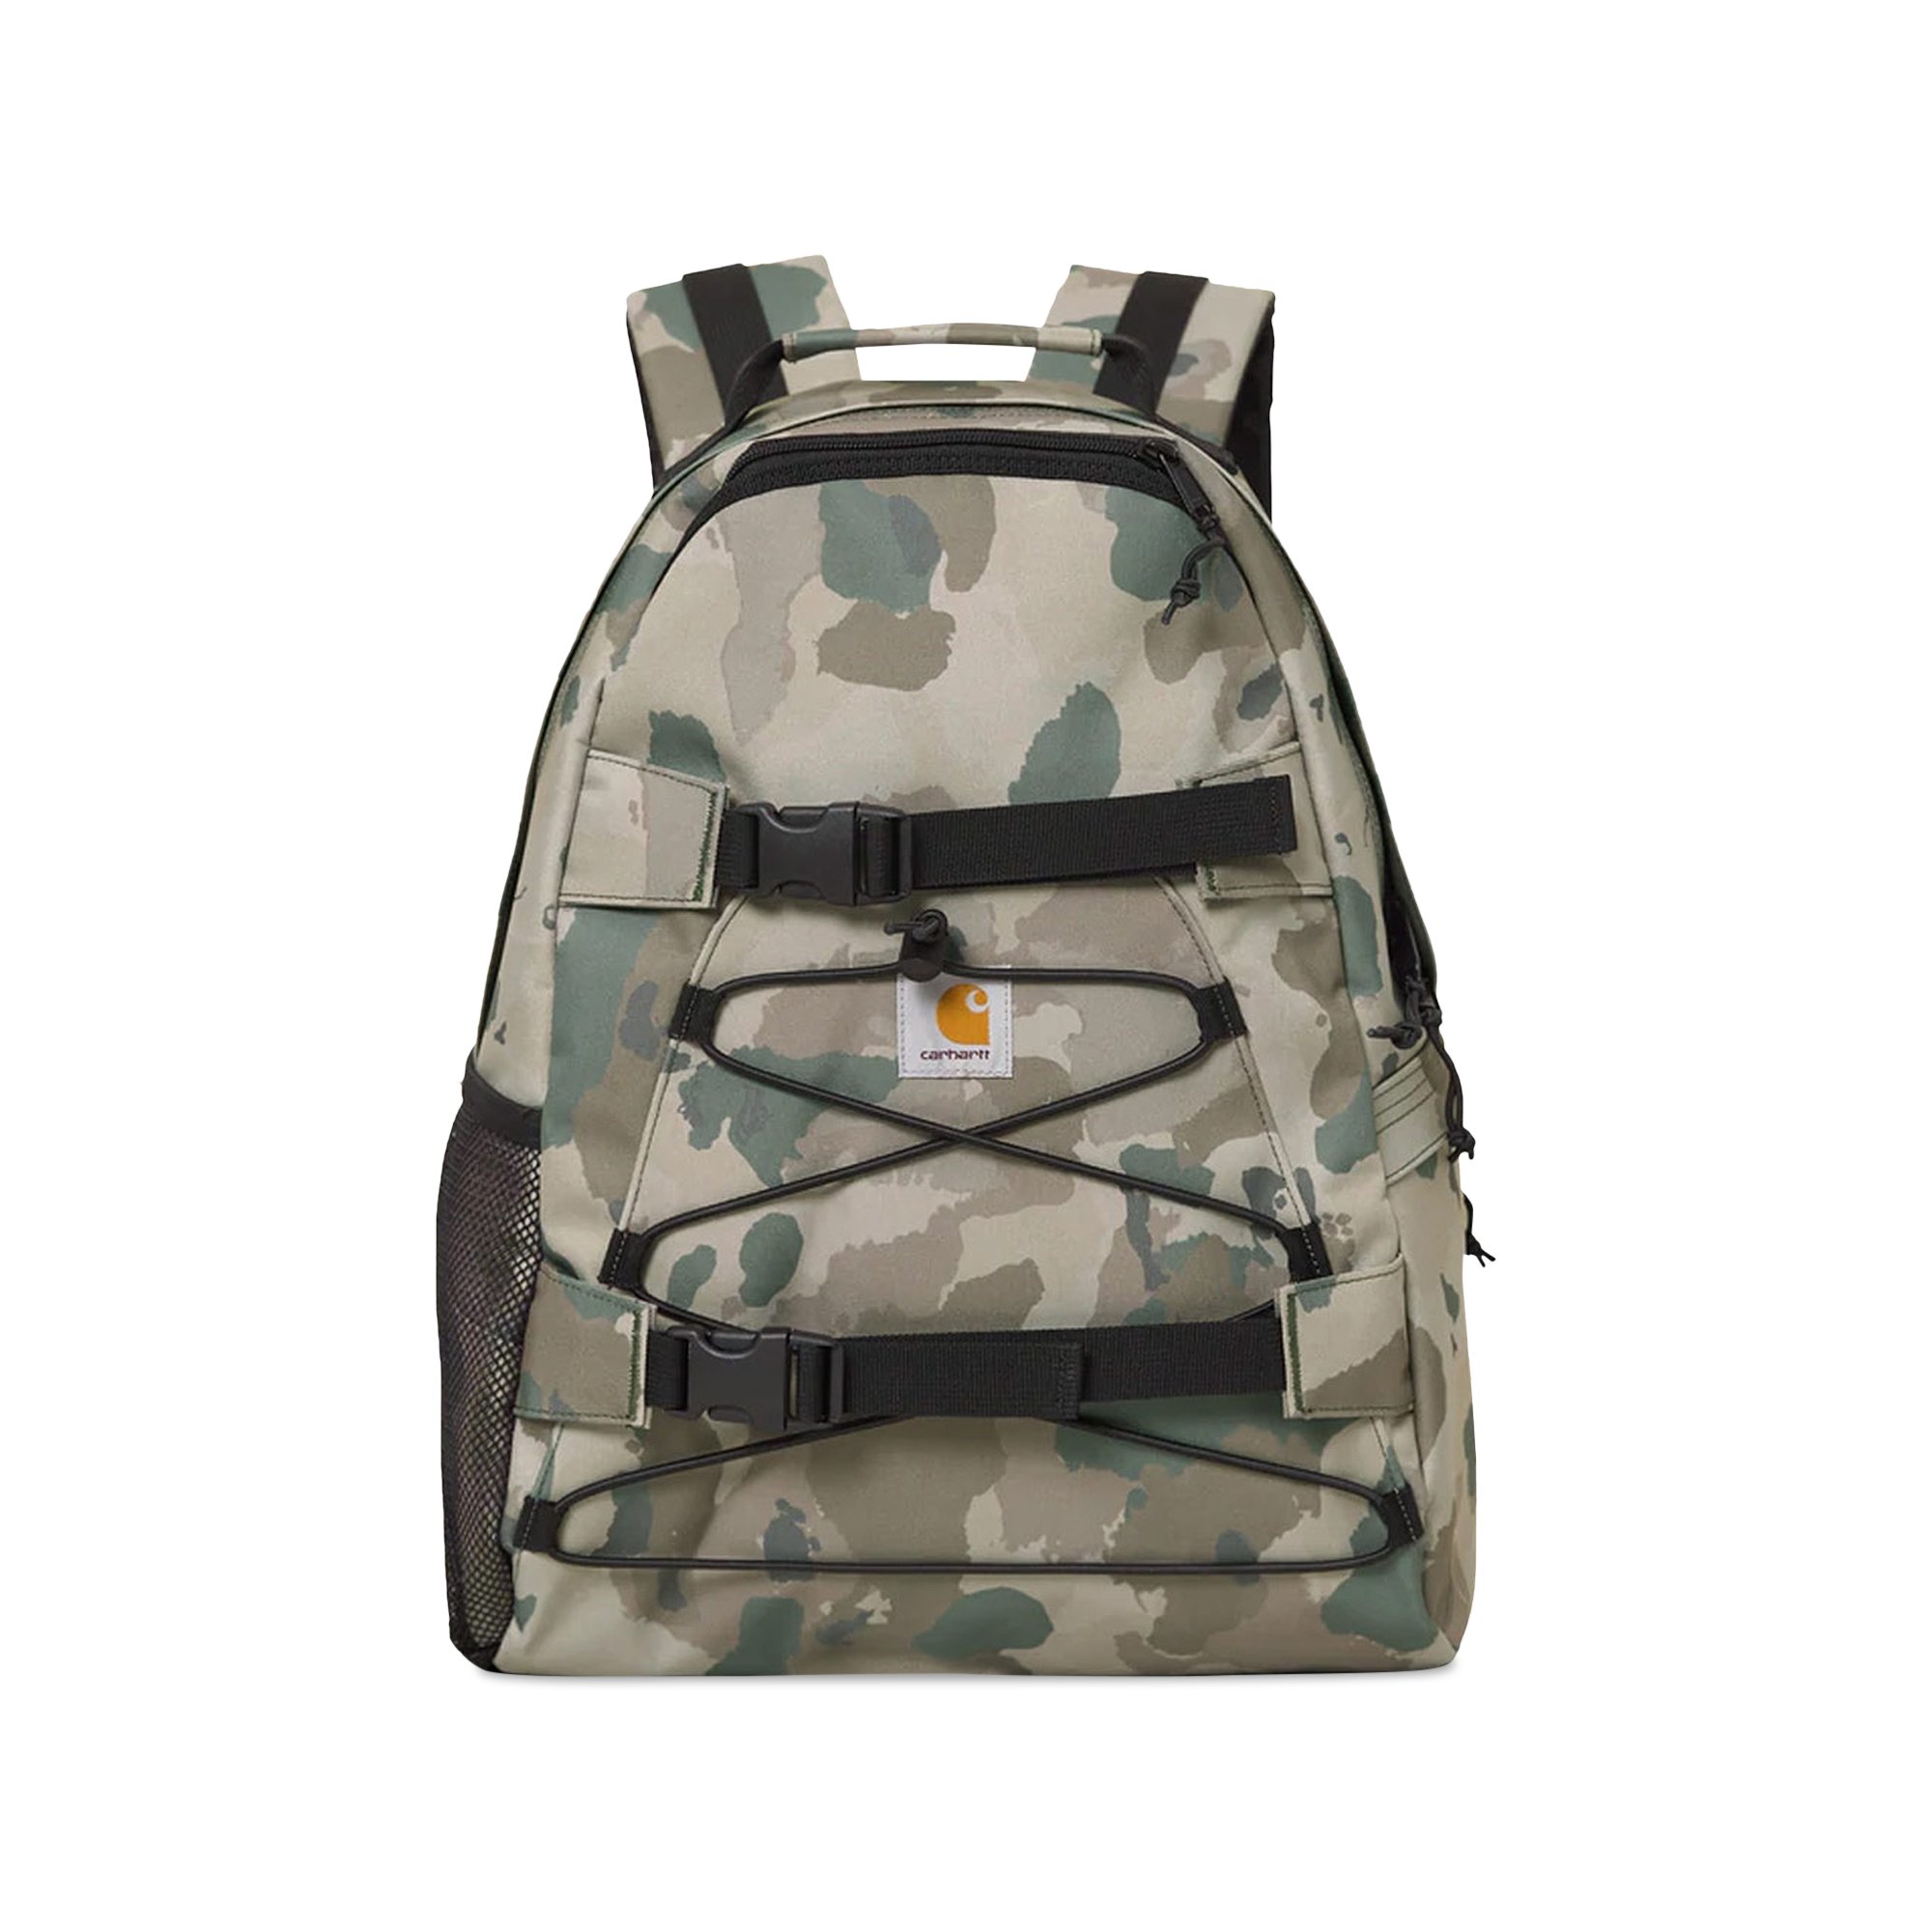 Buy Carhartt WIP Kickflip Backpack 'Camo Laurel' - I006288 CAMO | GOAT